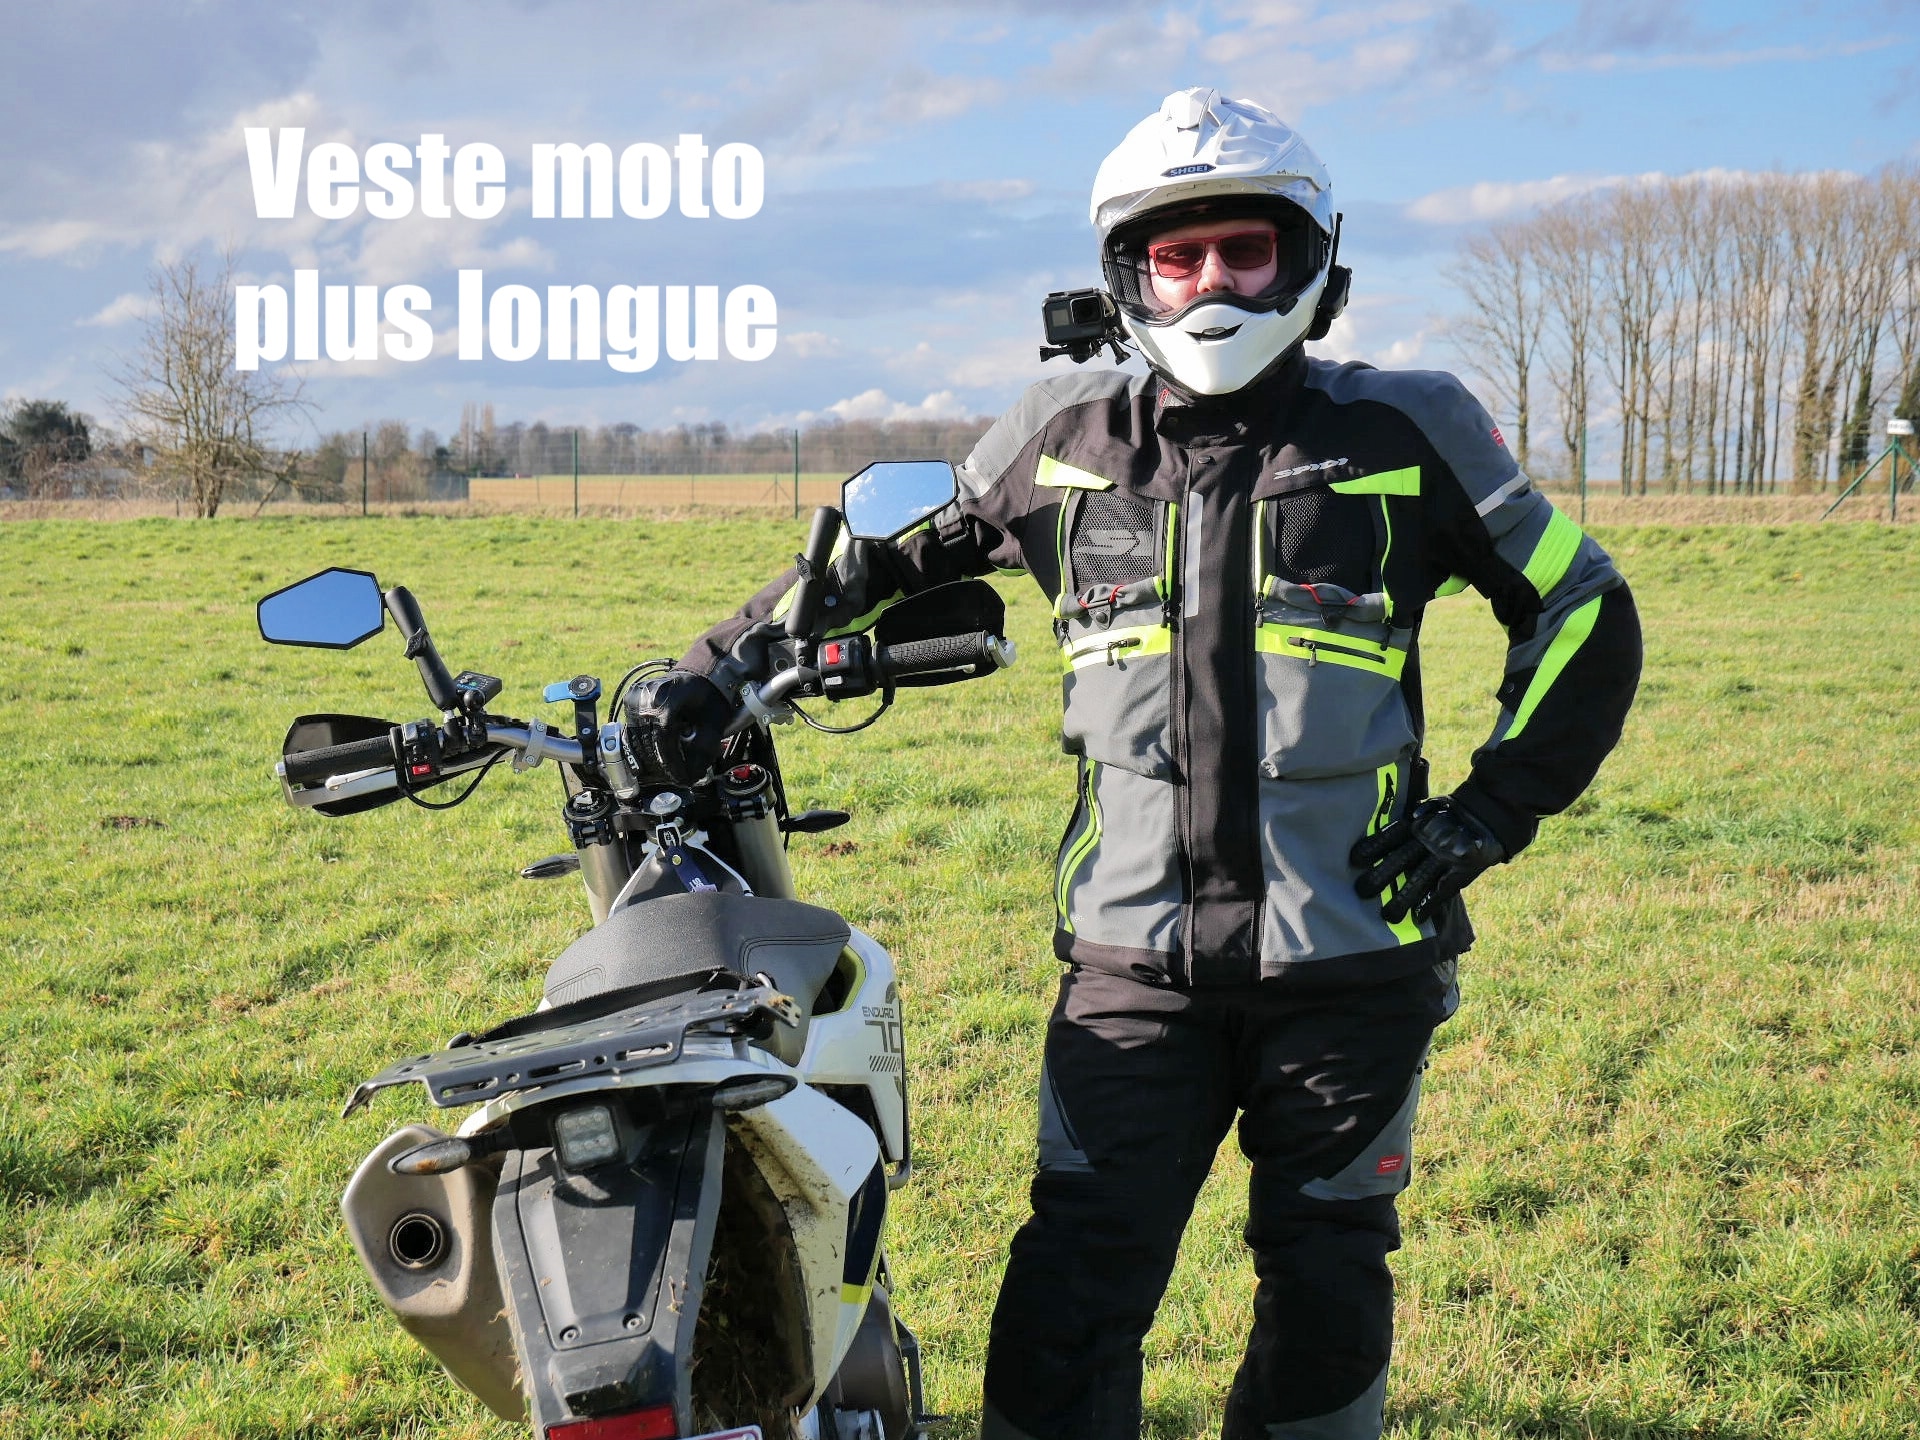 Comment choisir sa veste et son pantalon moto Touring ou Adventure